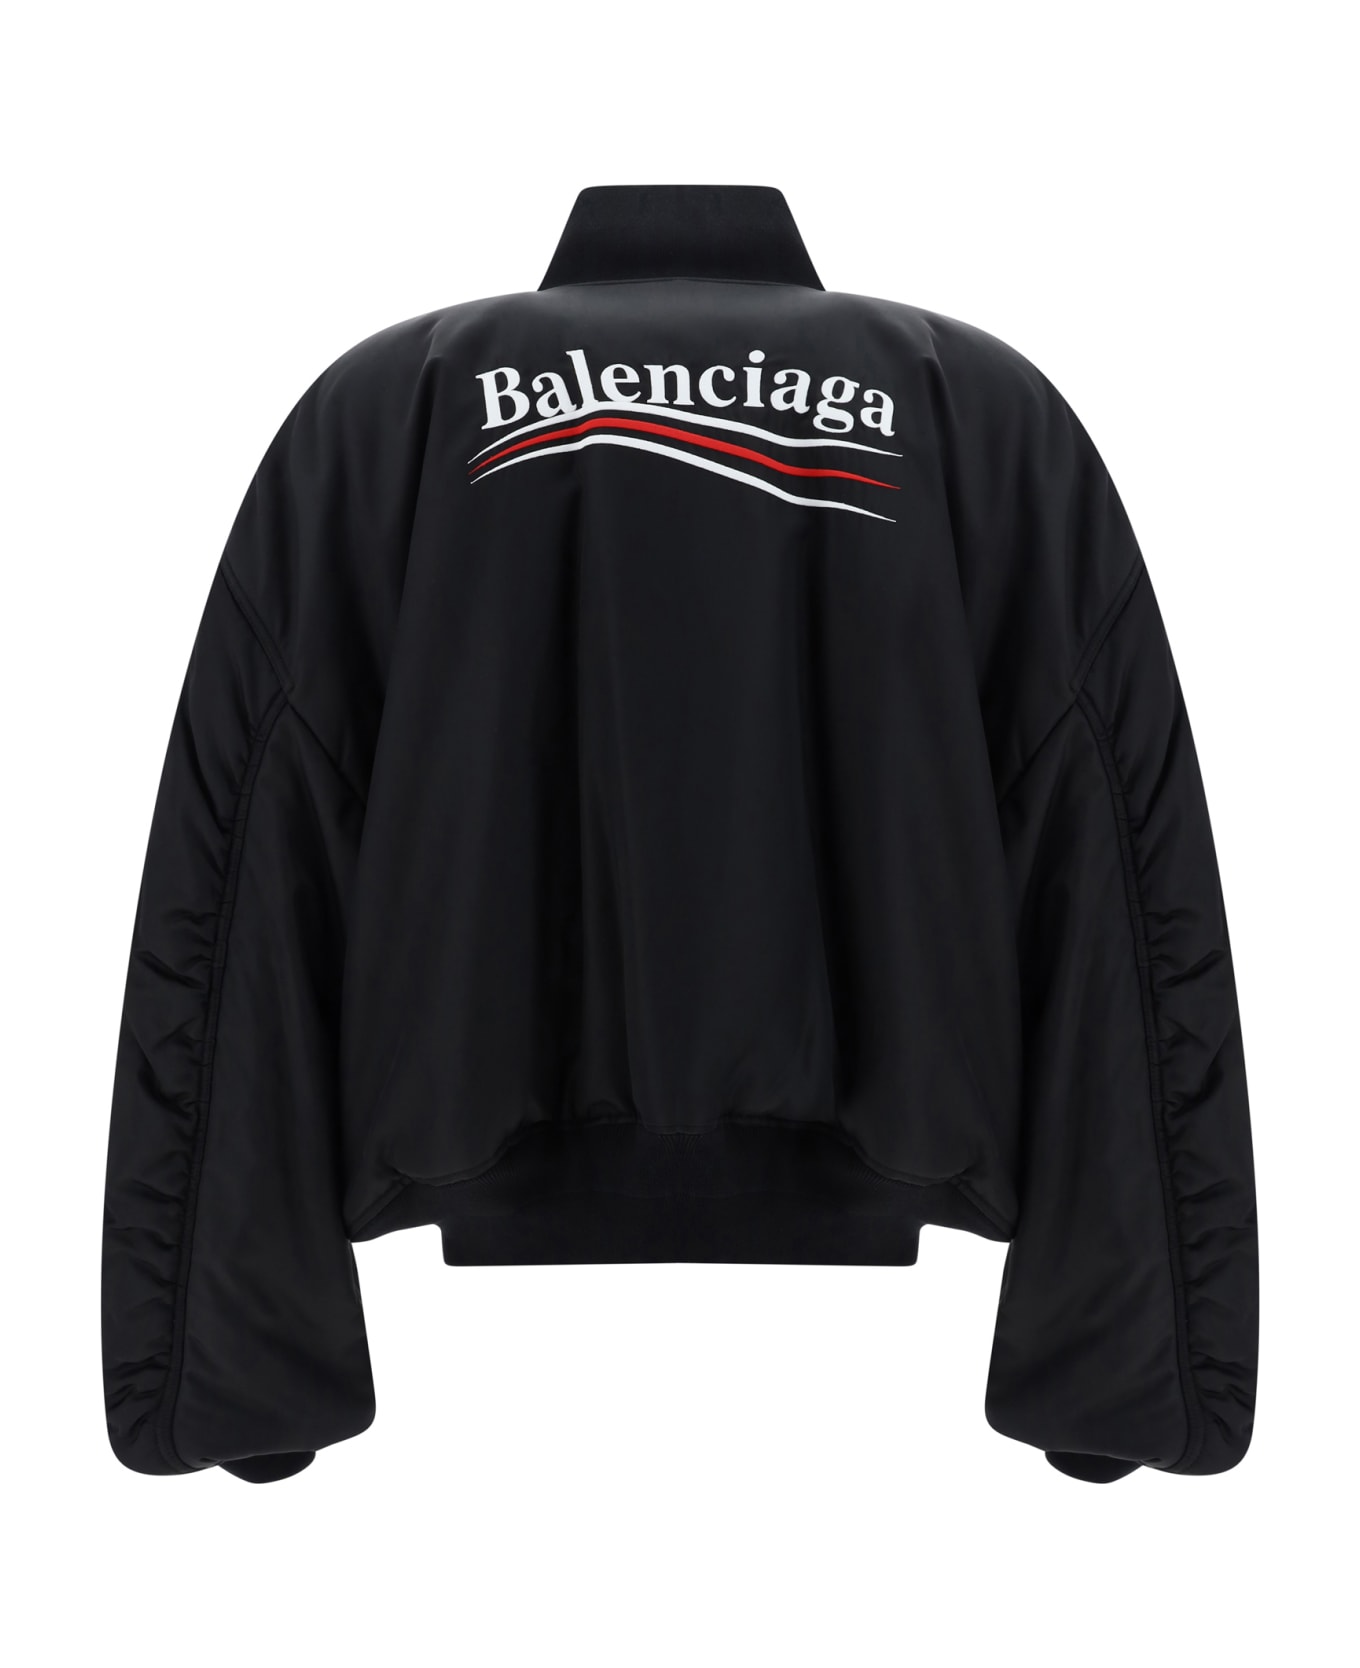 Balenciaga Varsity Bomber Jacket - Black